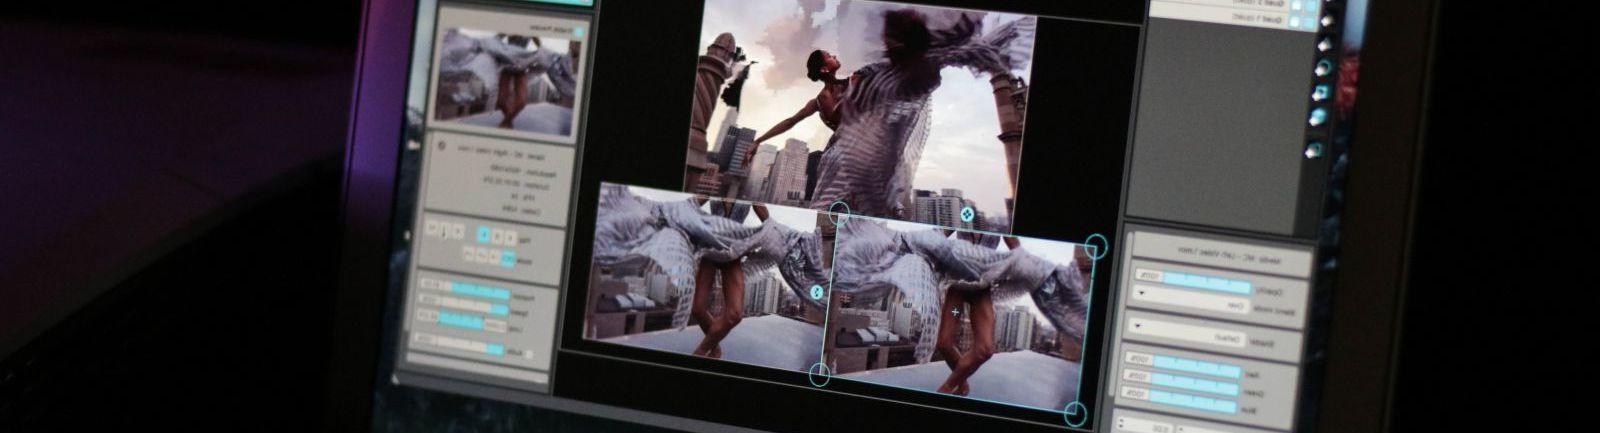 电脑显示器上正在显示一个女人跳舞的剪辑画面.